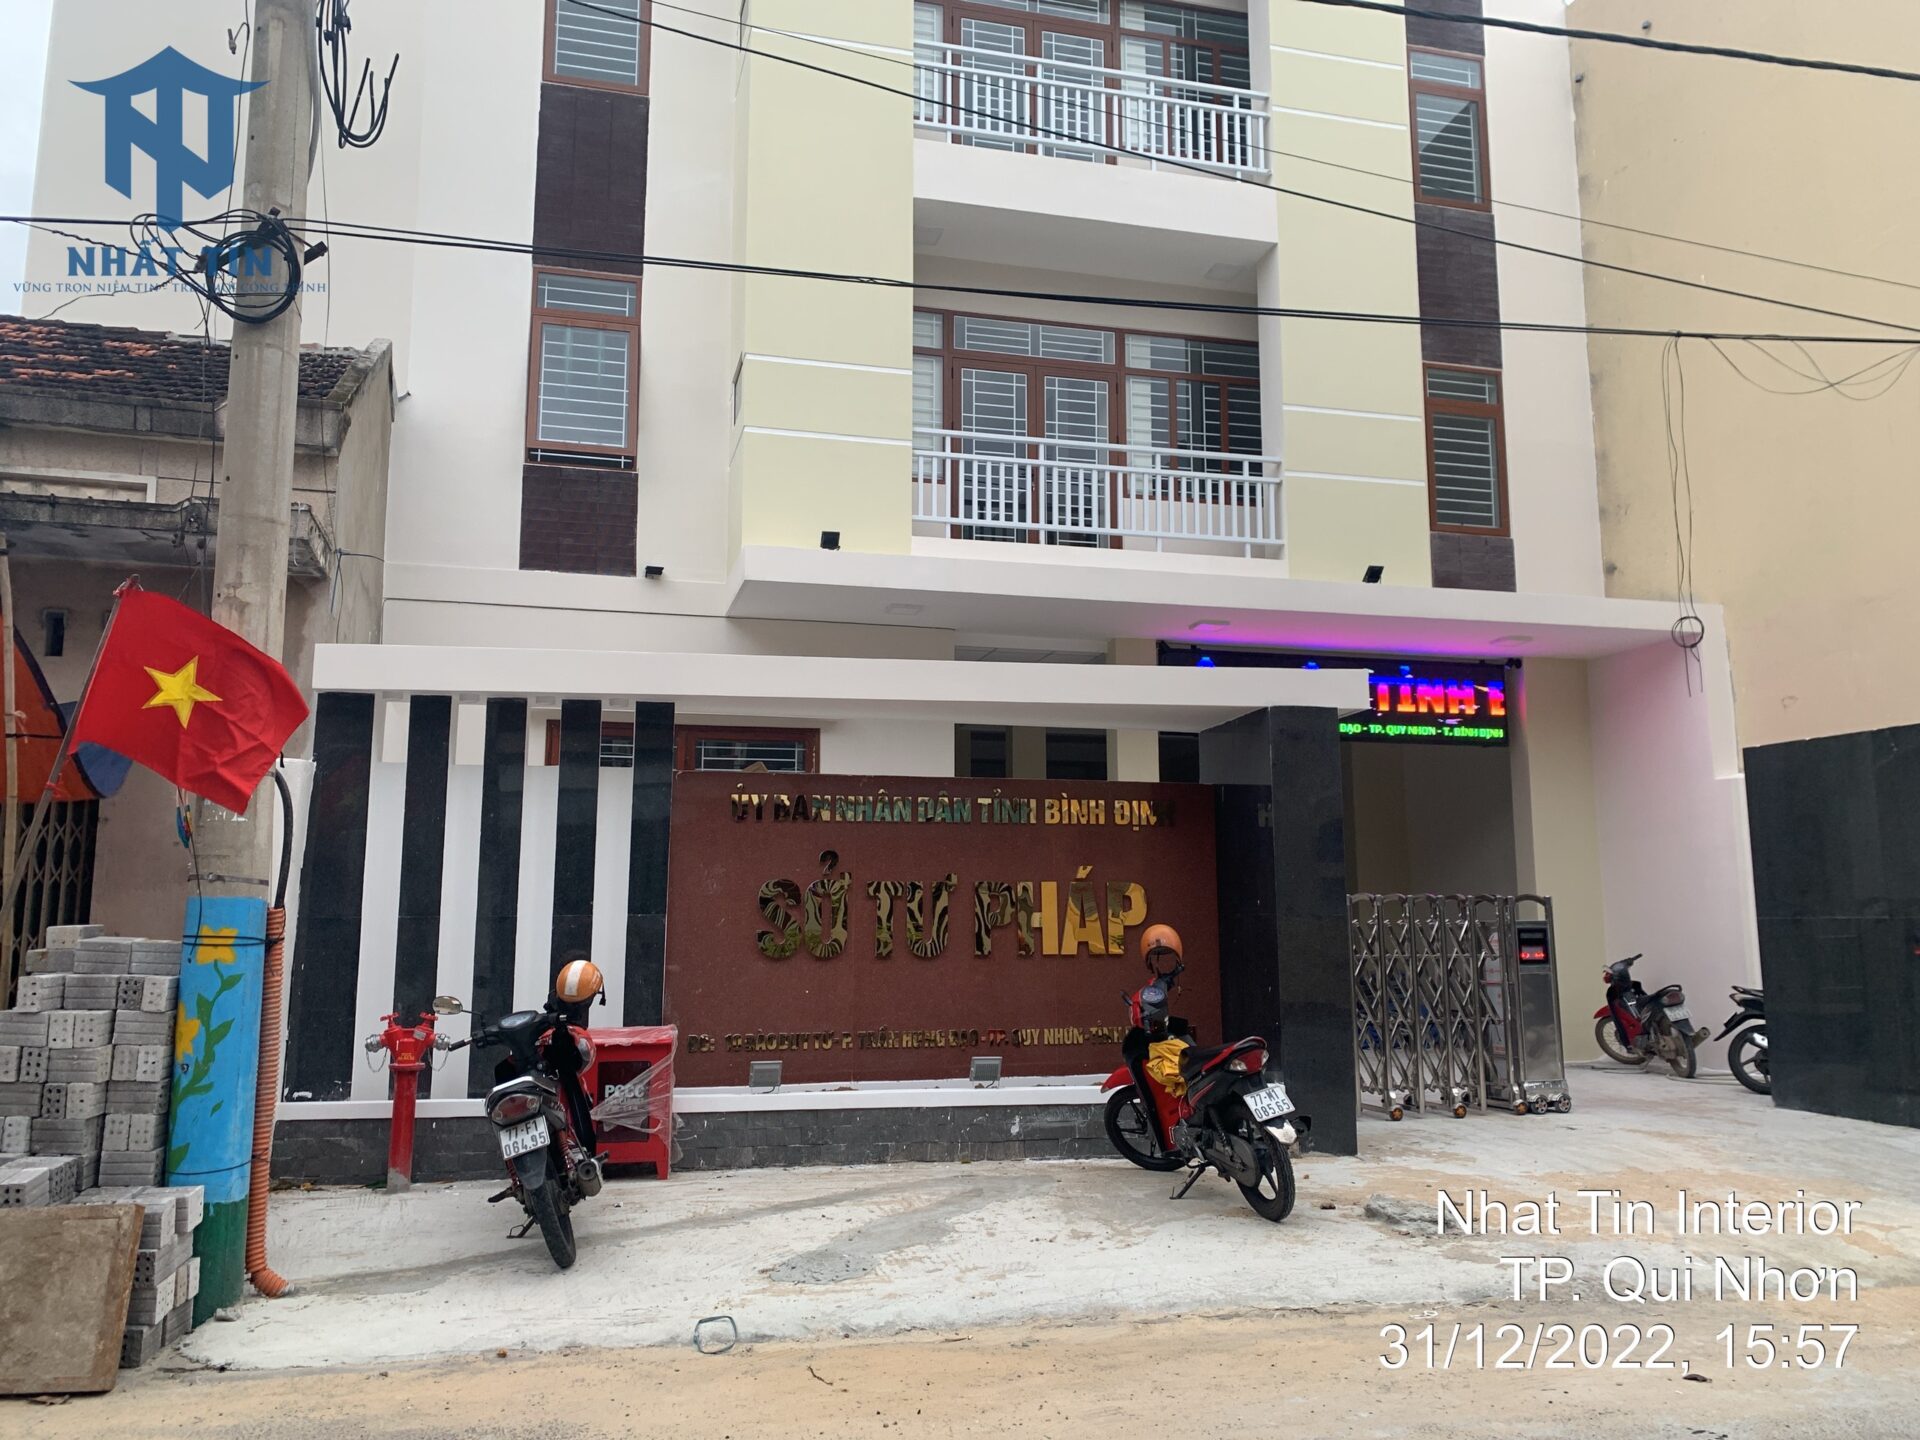 Nhất Tín lắp đặt sàn nhựa sân khấu Sở Tư Pháp tỉnh Bình Định